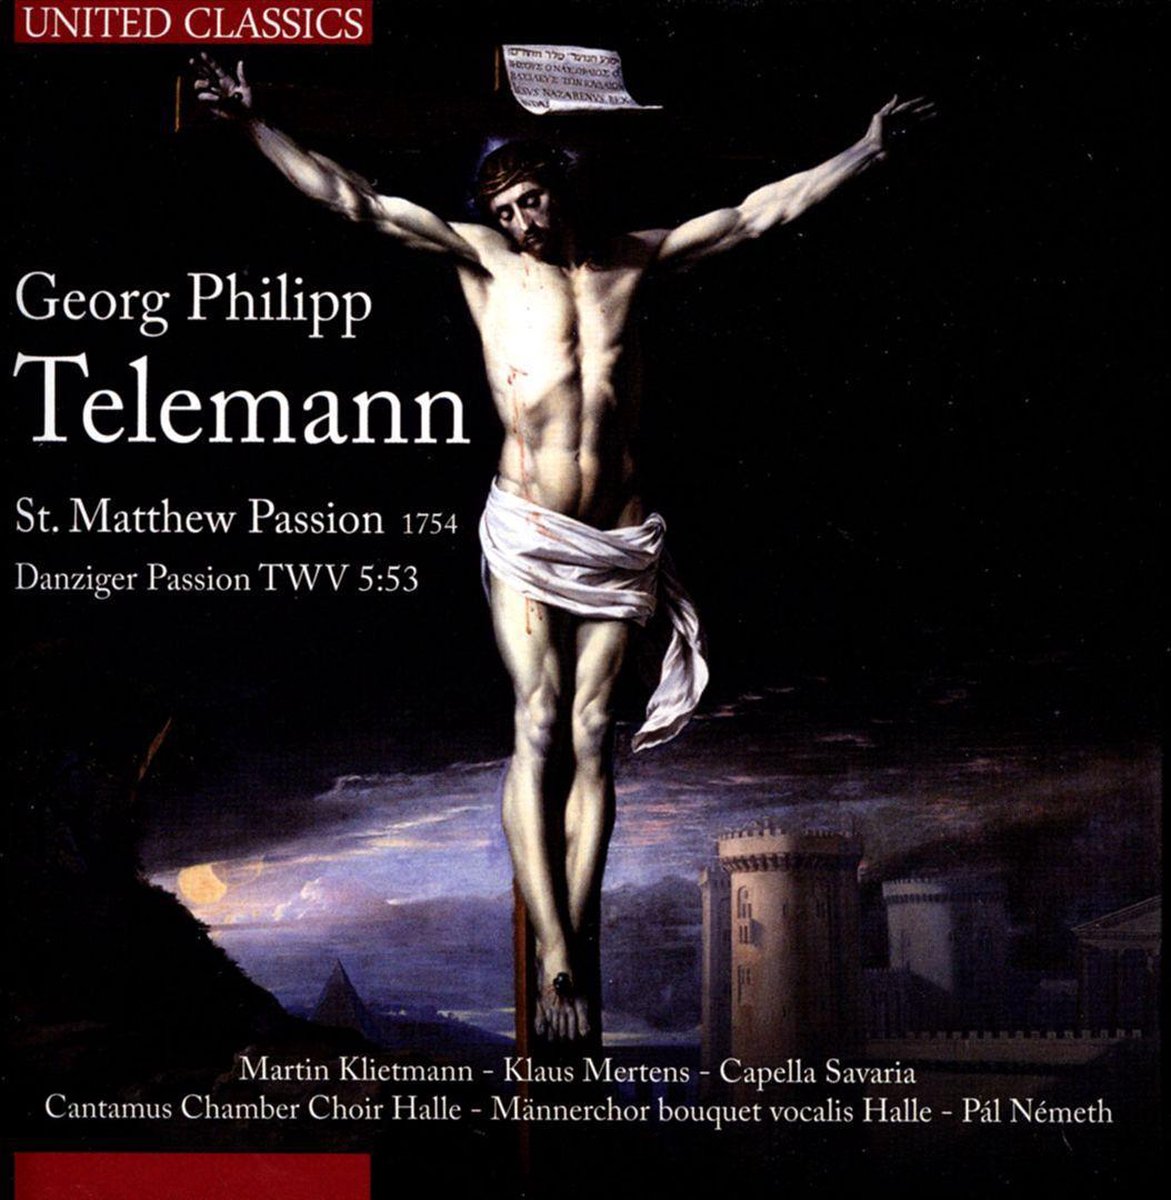 St. Matthew Passion (Telemann / 1754)